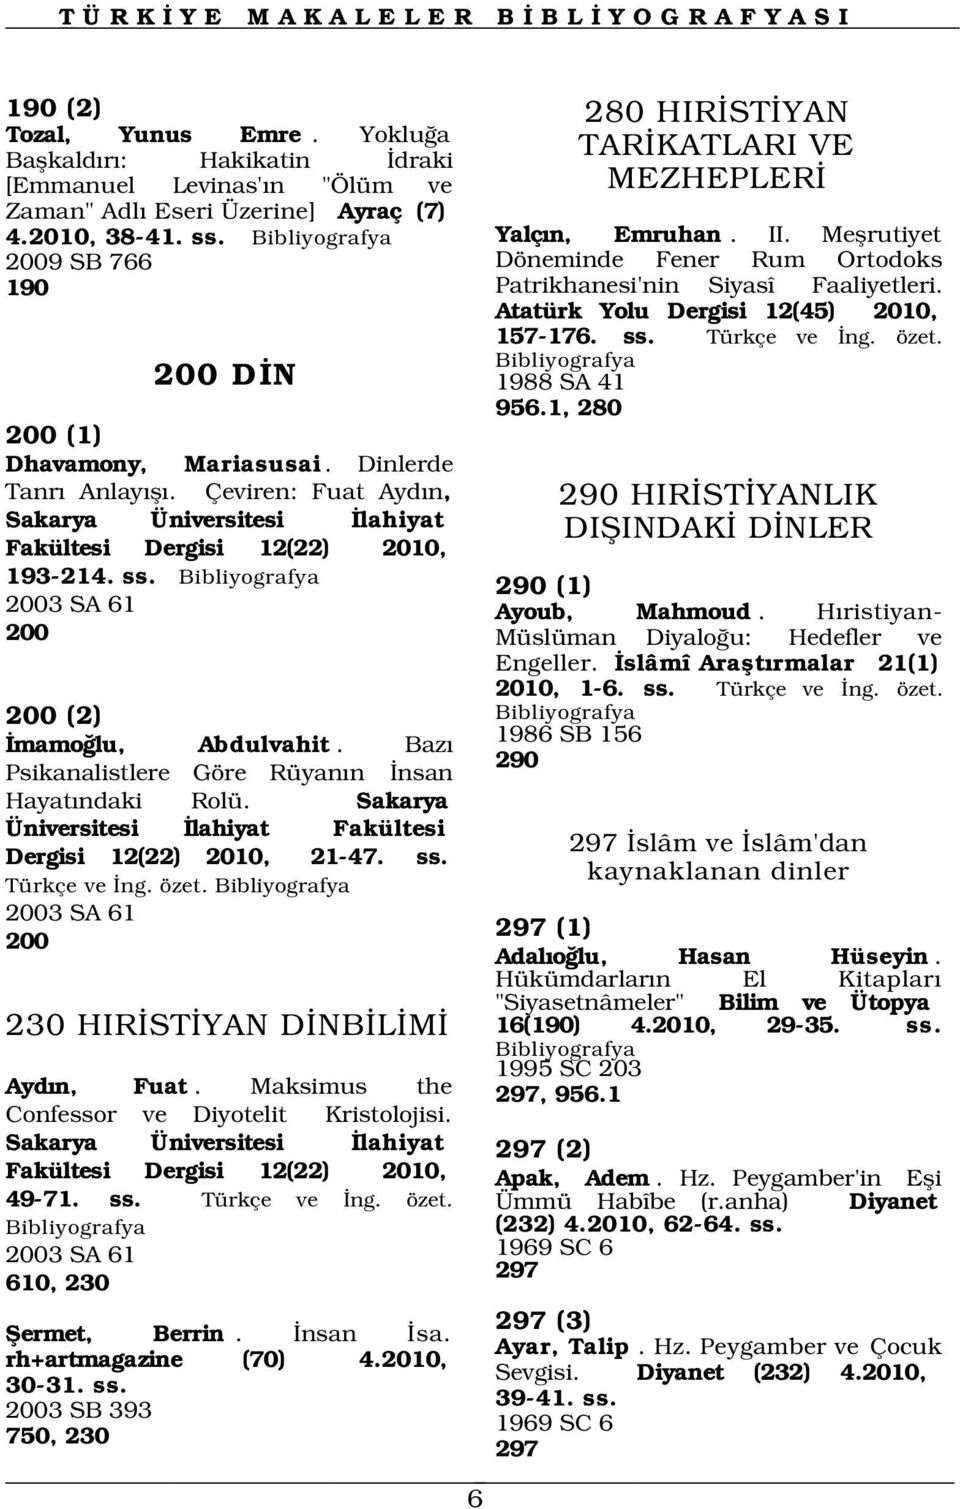 Çeviren: Fuat Ayd n, Sakarya Üniversitesi lahiyat Fakültesi Dergisi 12(22) 2010, 193-214. ss. Döneminde Fener Rum Ortodoks Patrikhanesi'nin Siyasî Faaliyetleri.